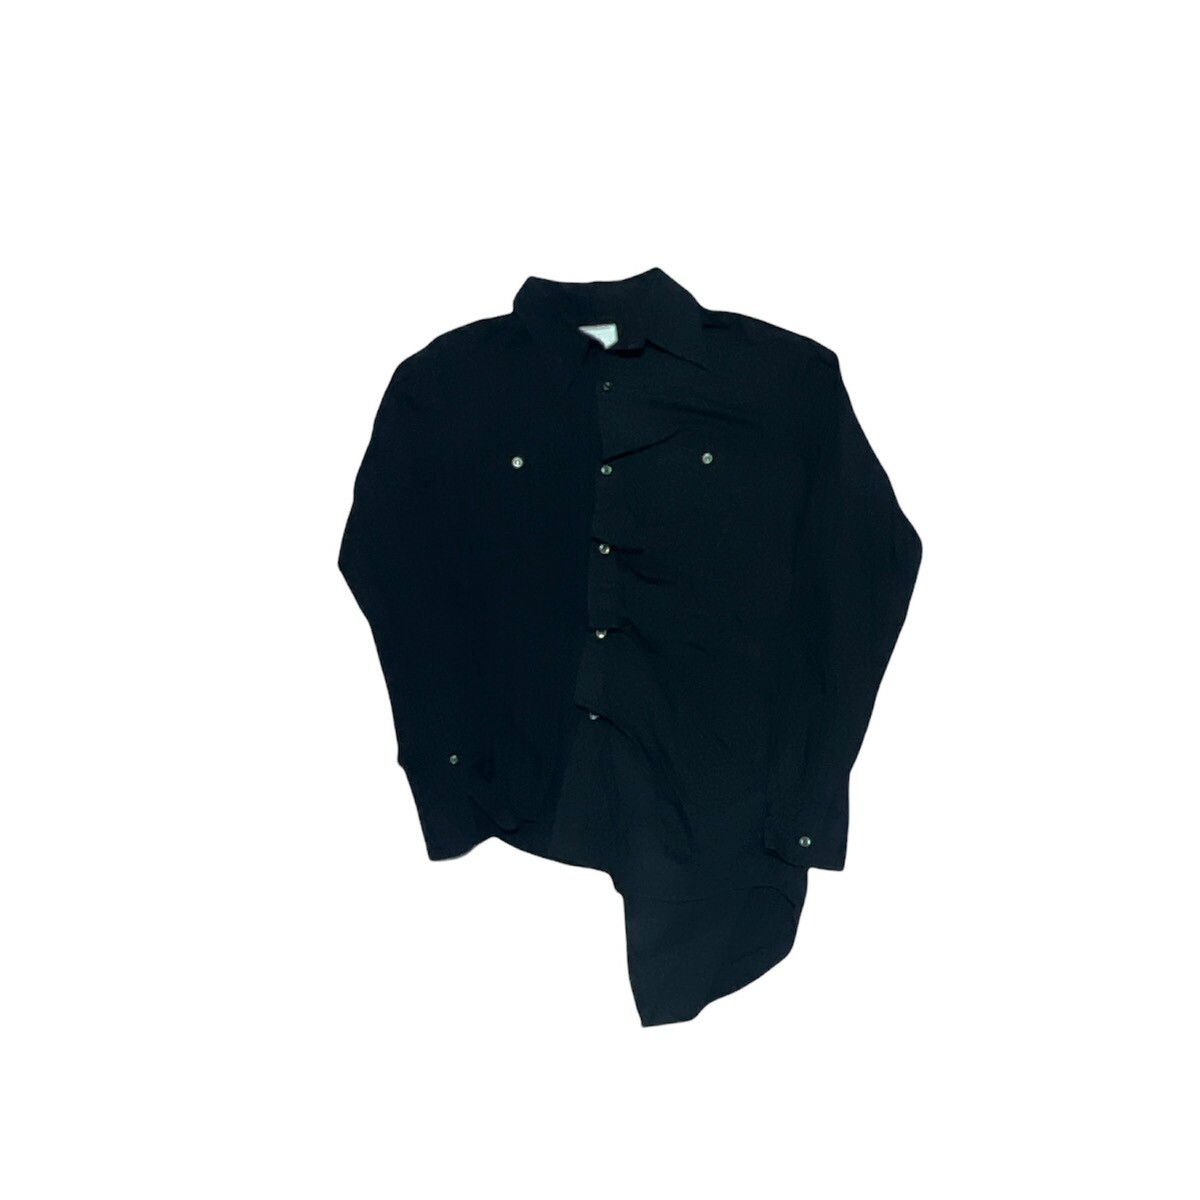 Miharayasuhiro Reconstructed Button up shirt - 1